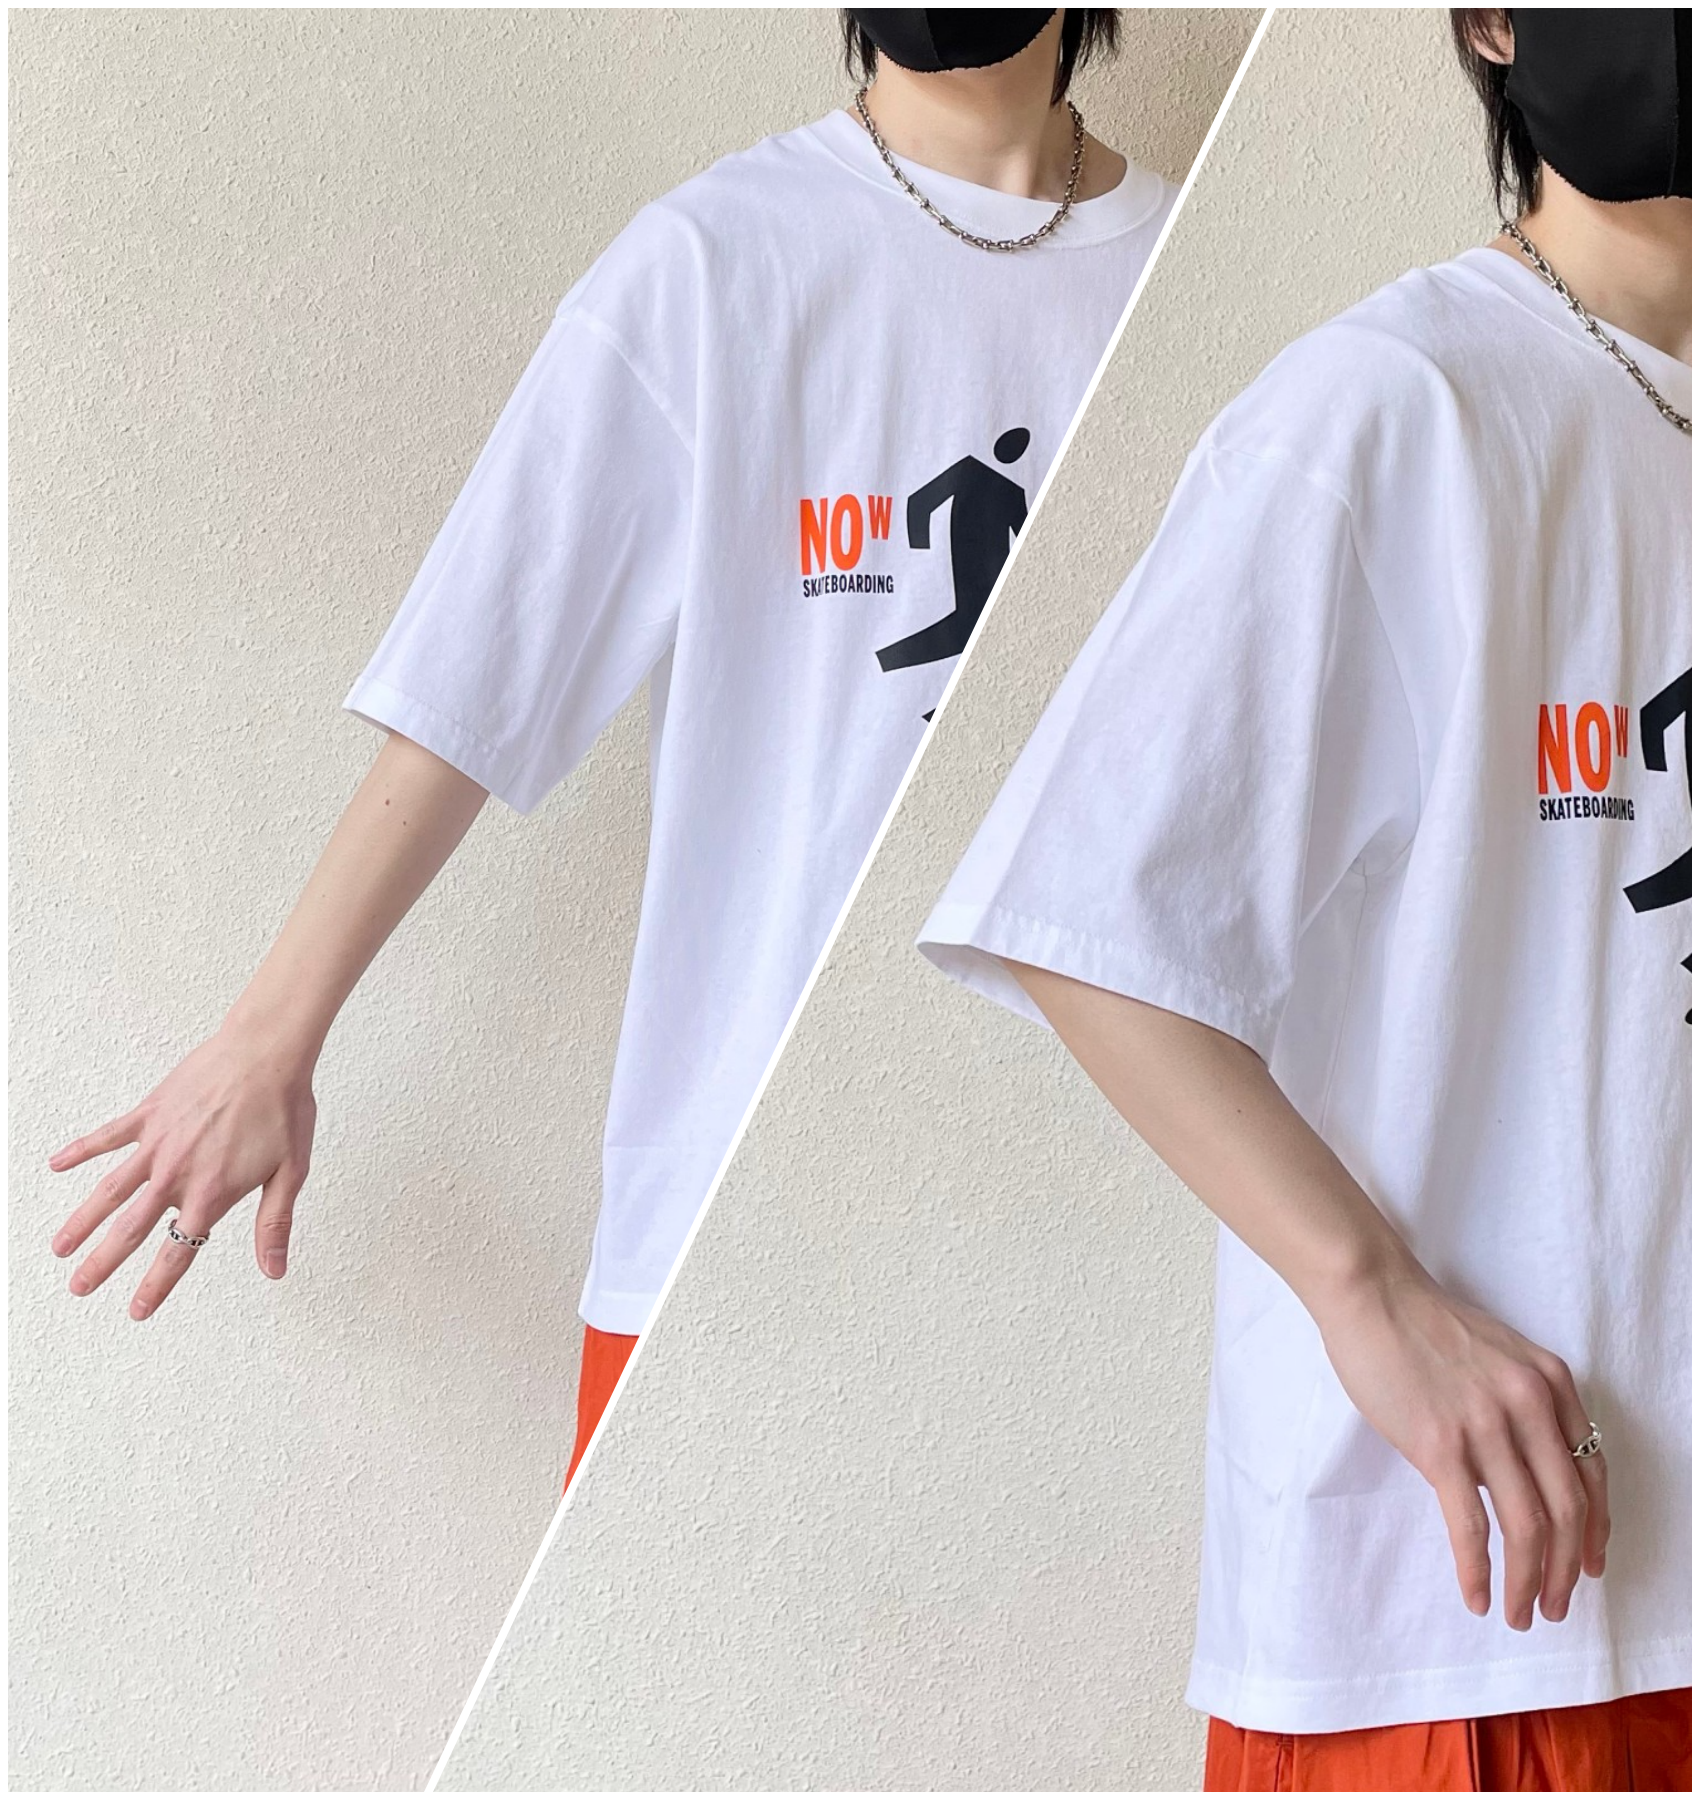 UNIQLO（ユニクロ）のおすすめのメンズアイテム「スケーターコレクション UT グラフィックTシャツ 上野伸平（5分袖・ワイドフィット）」